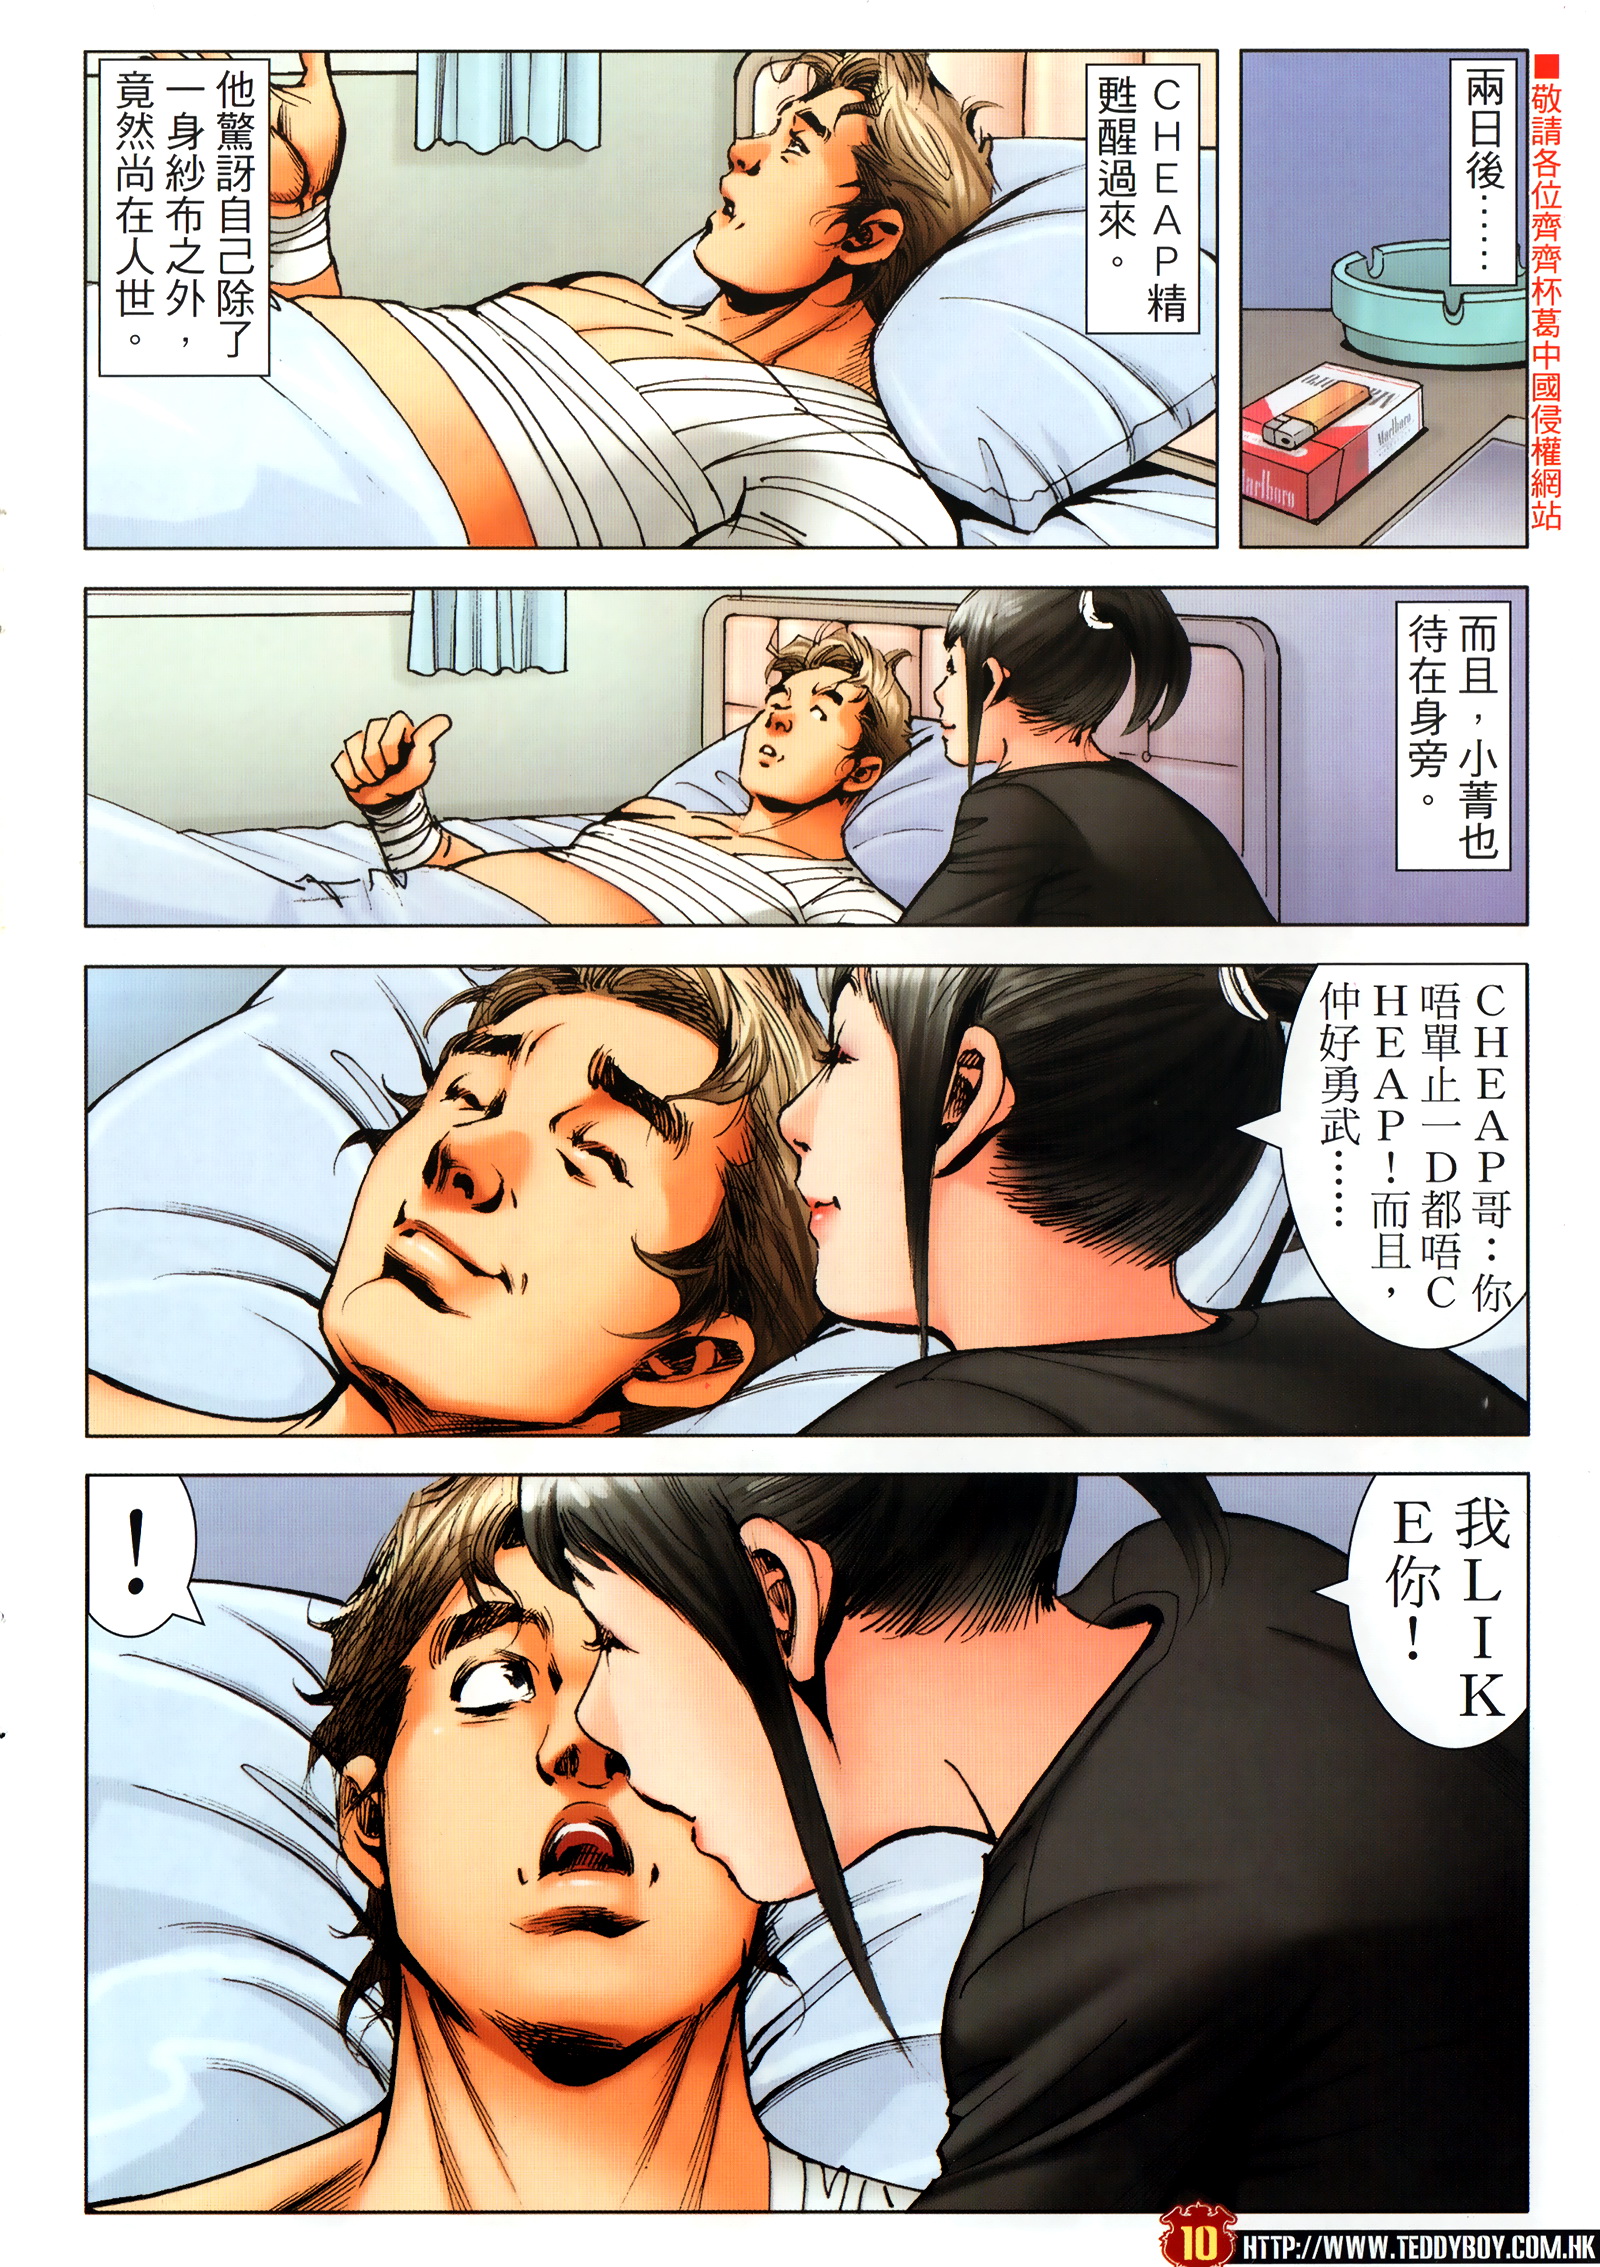 《古惑仔》漫画 第2303回 立花浩南生死决